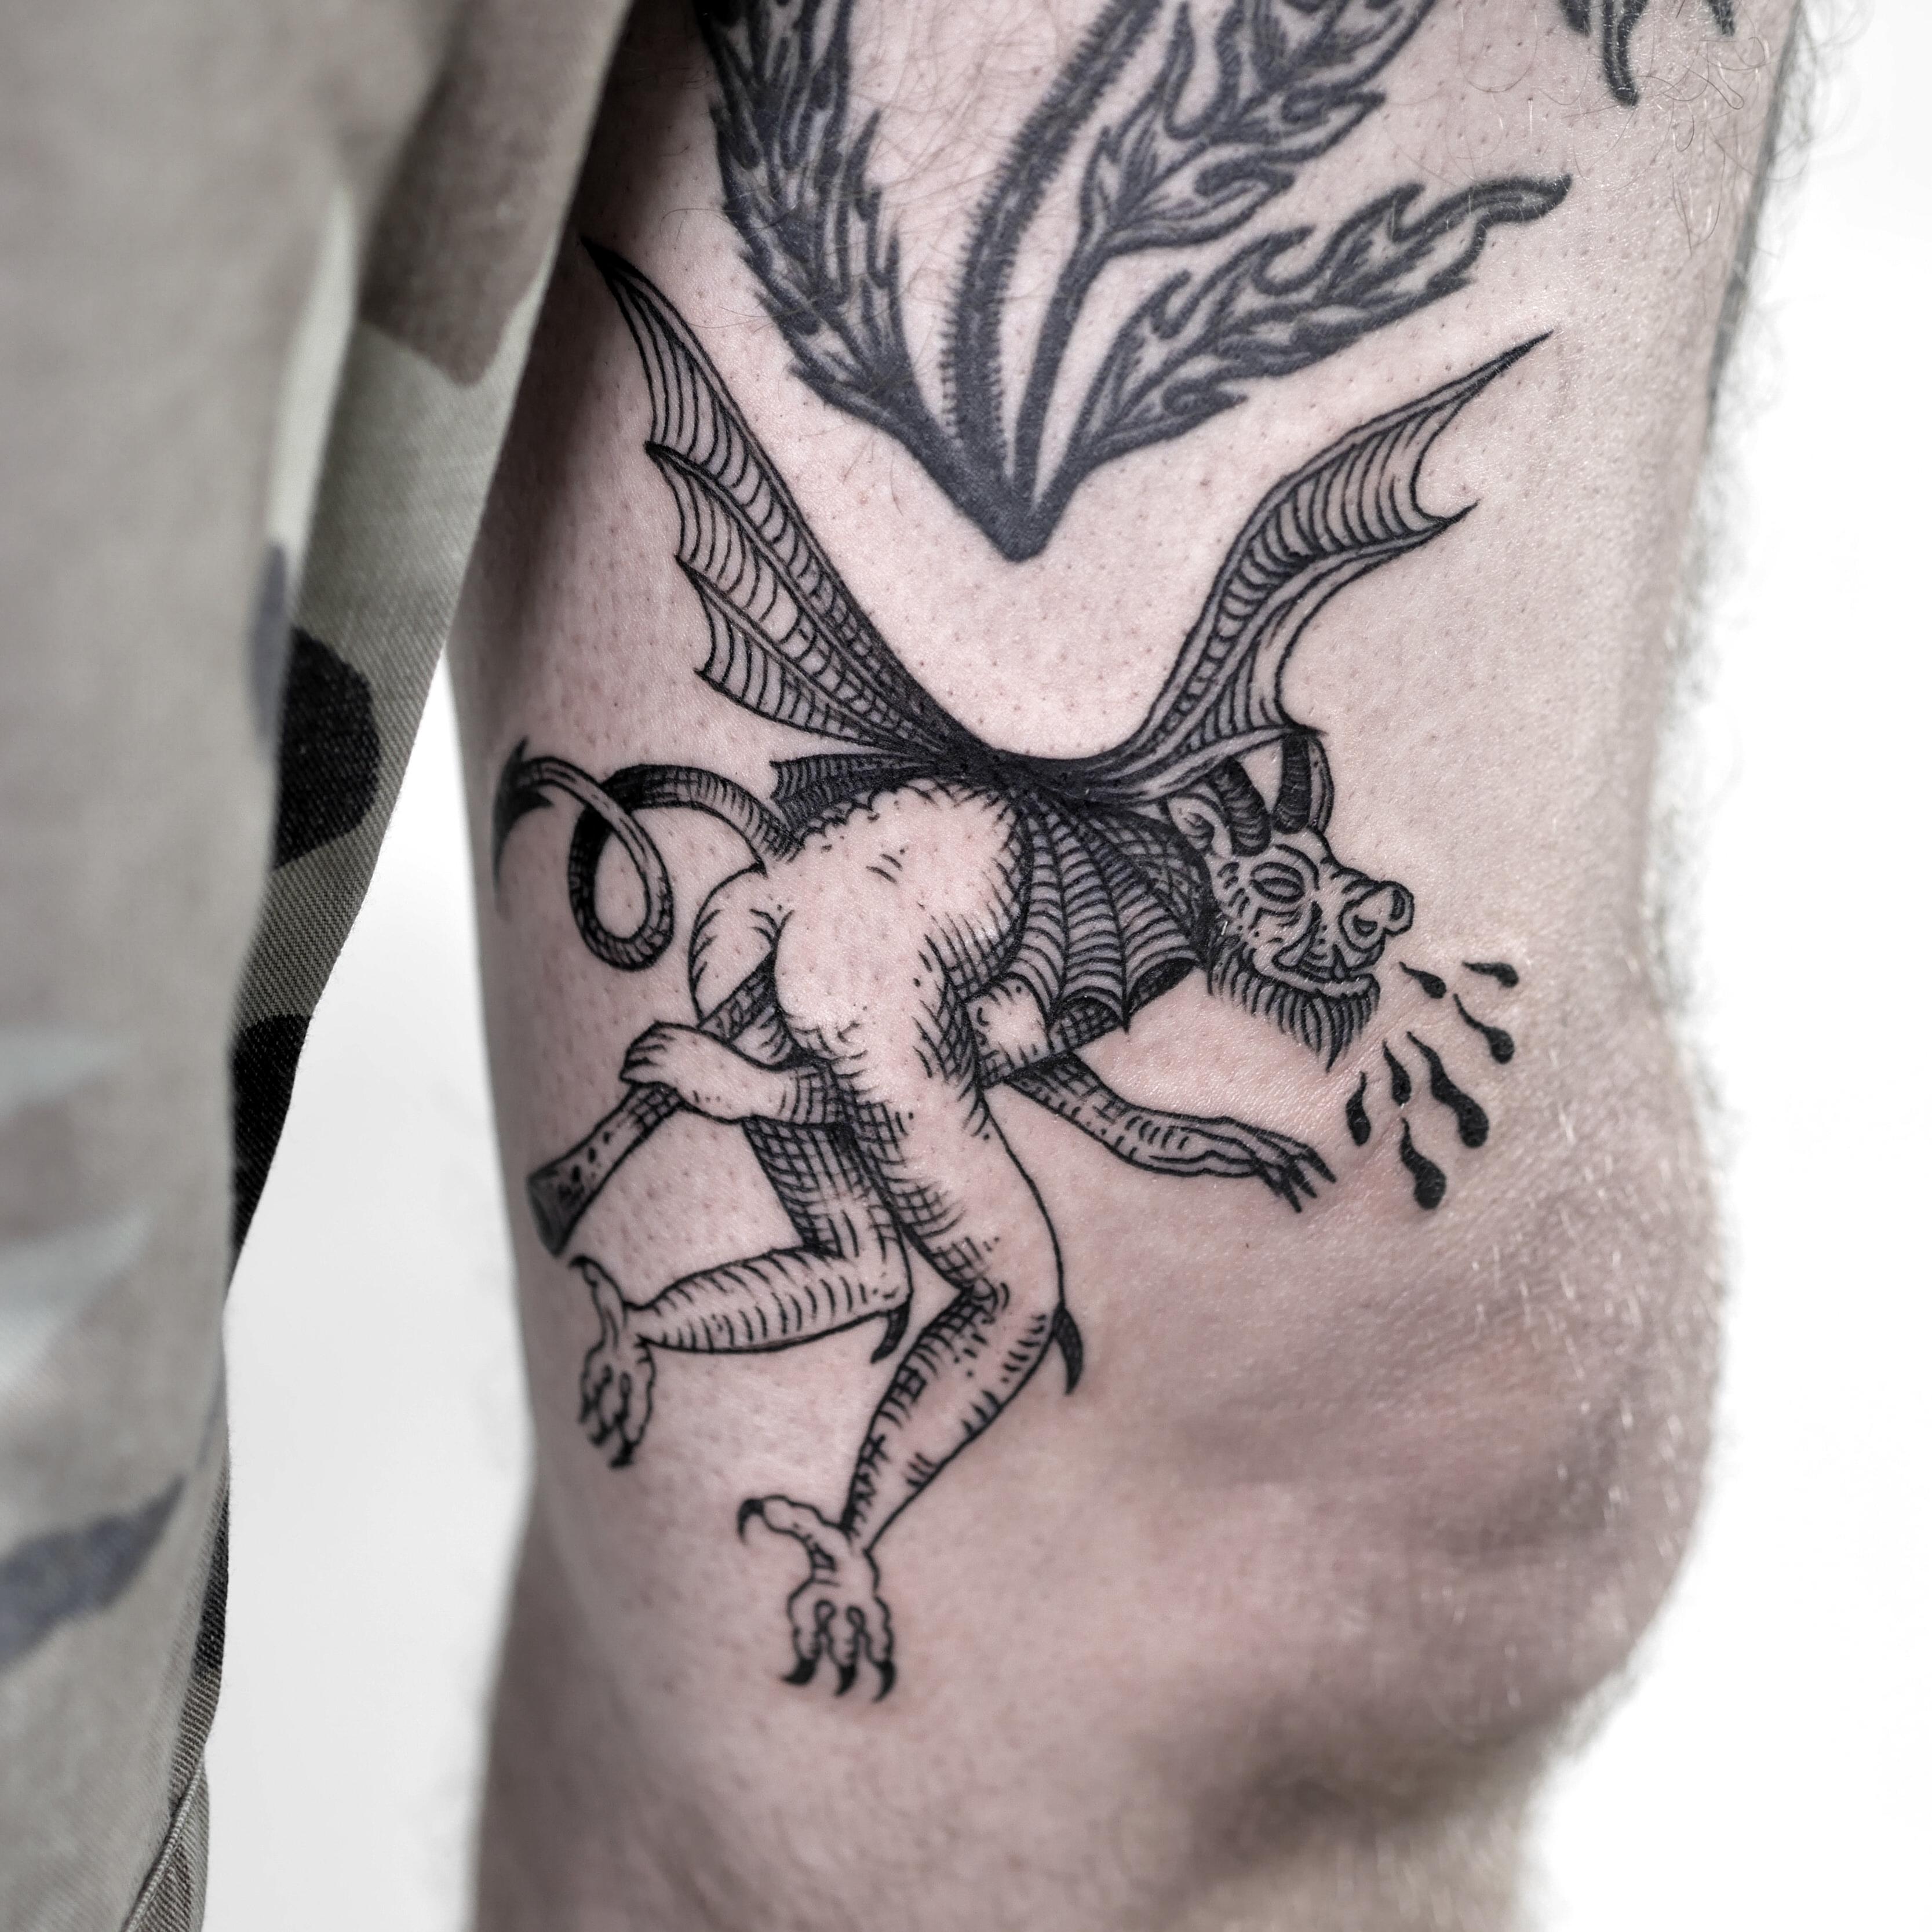 Inksearch tattoo Ola Krupnik